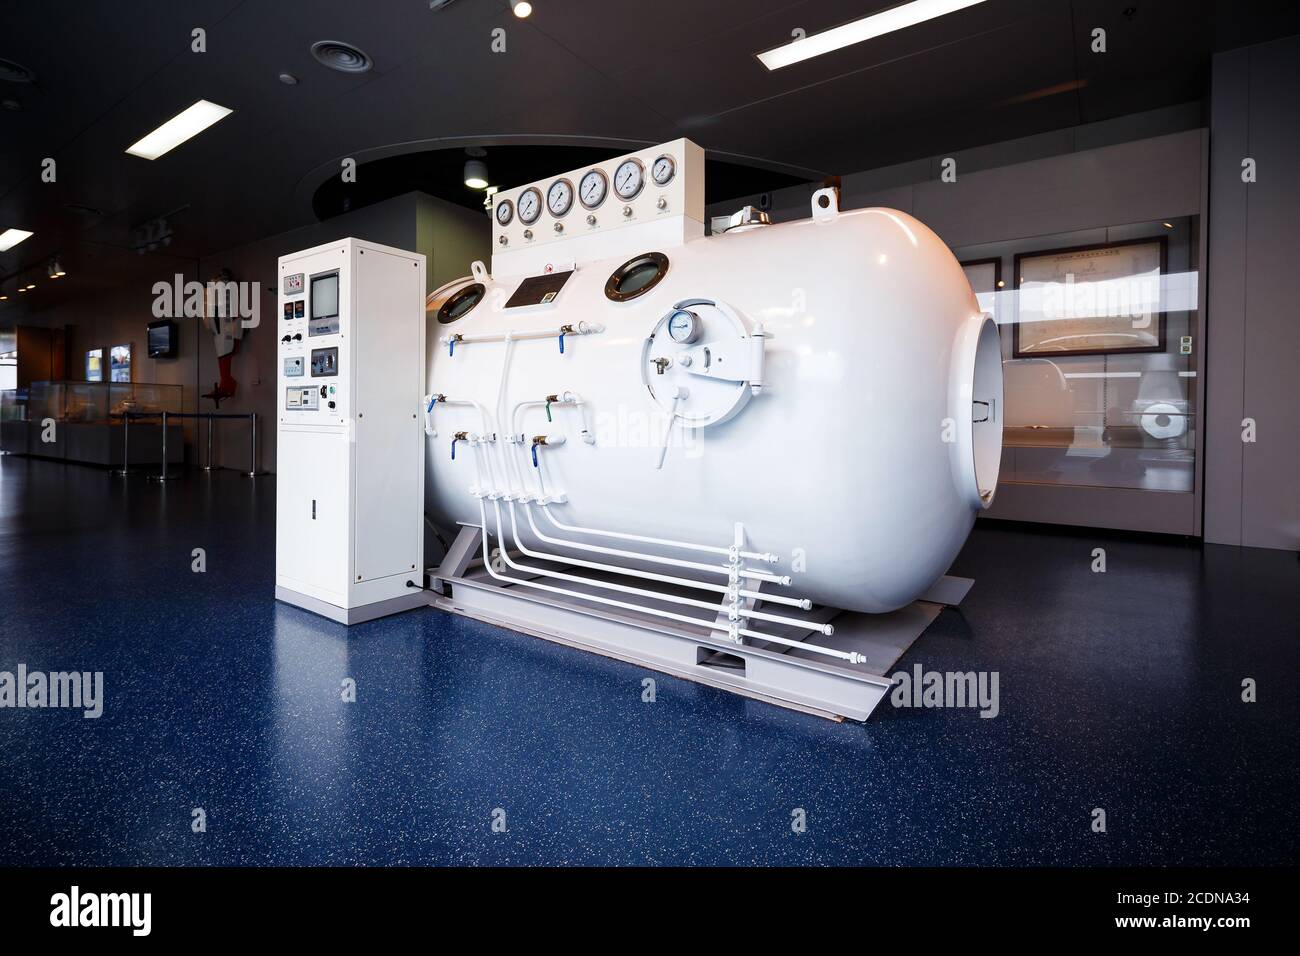 La chambre de pression pour la plongée sous-marine marine Photo Stock -  Alamy